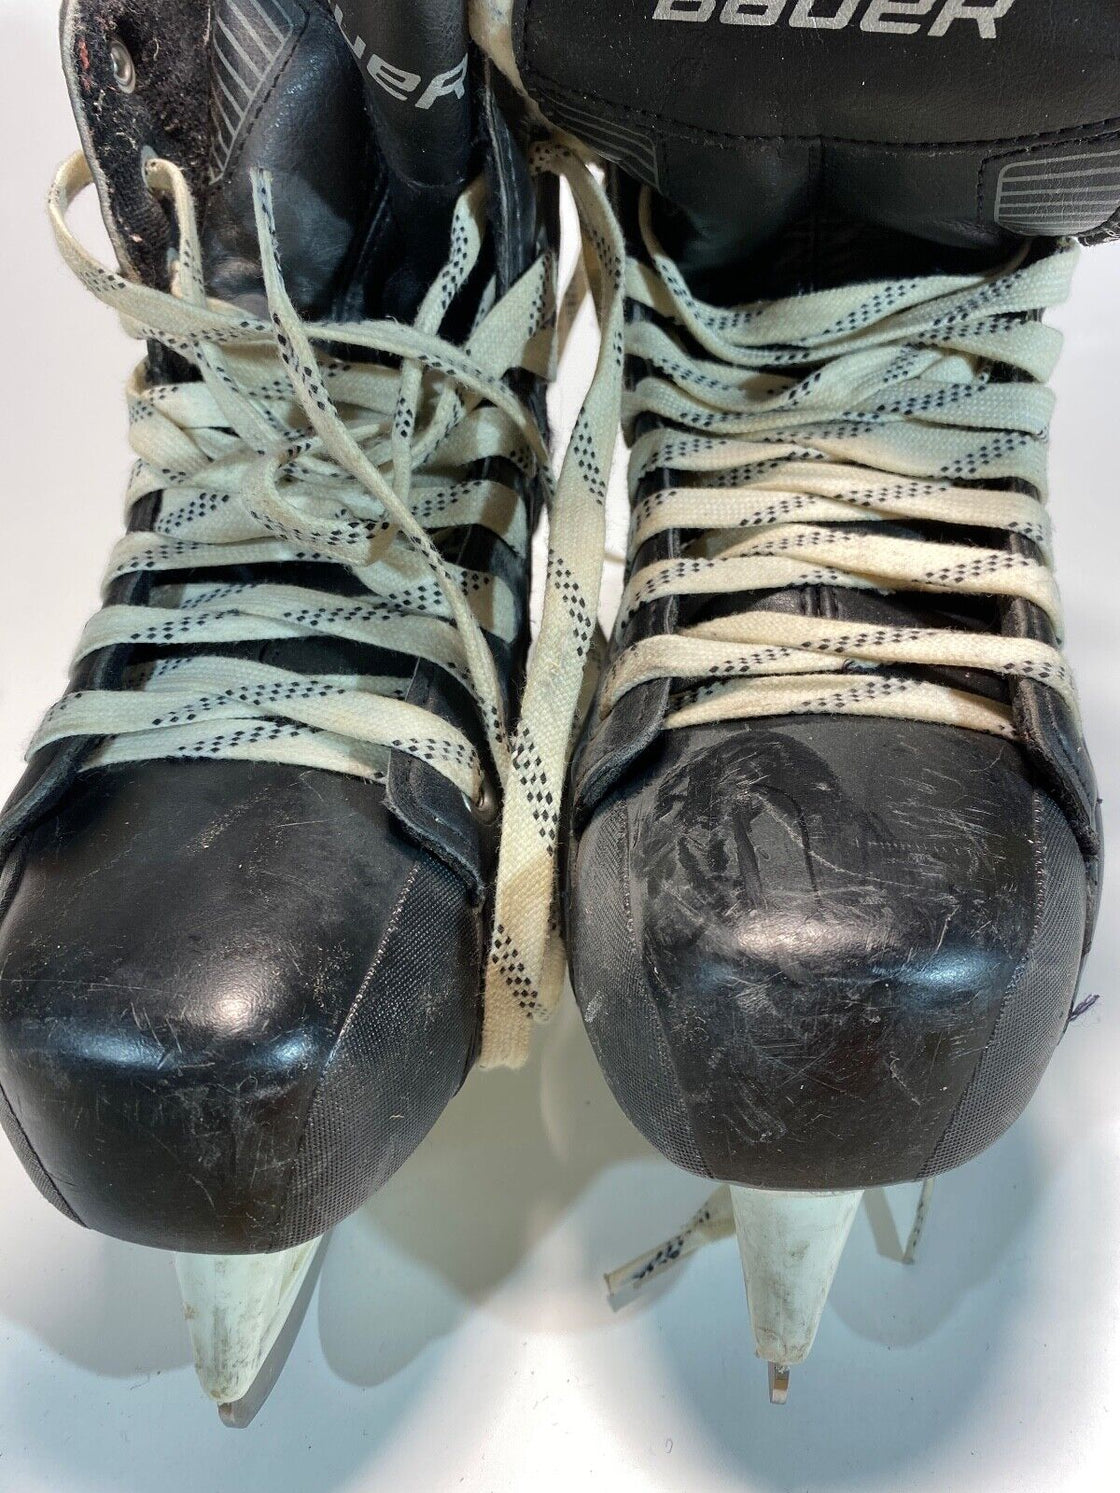 Bauer Ice Skates for Ice Hockey Shoes Unisex Size US8, EU42, Mondo 270